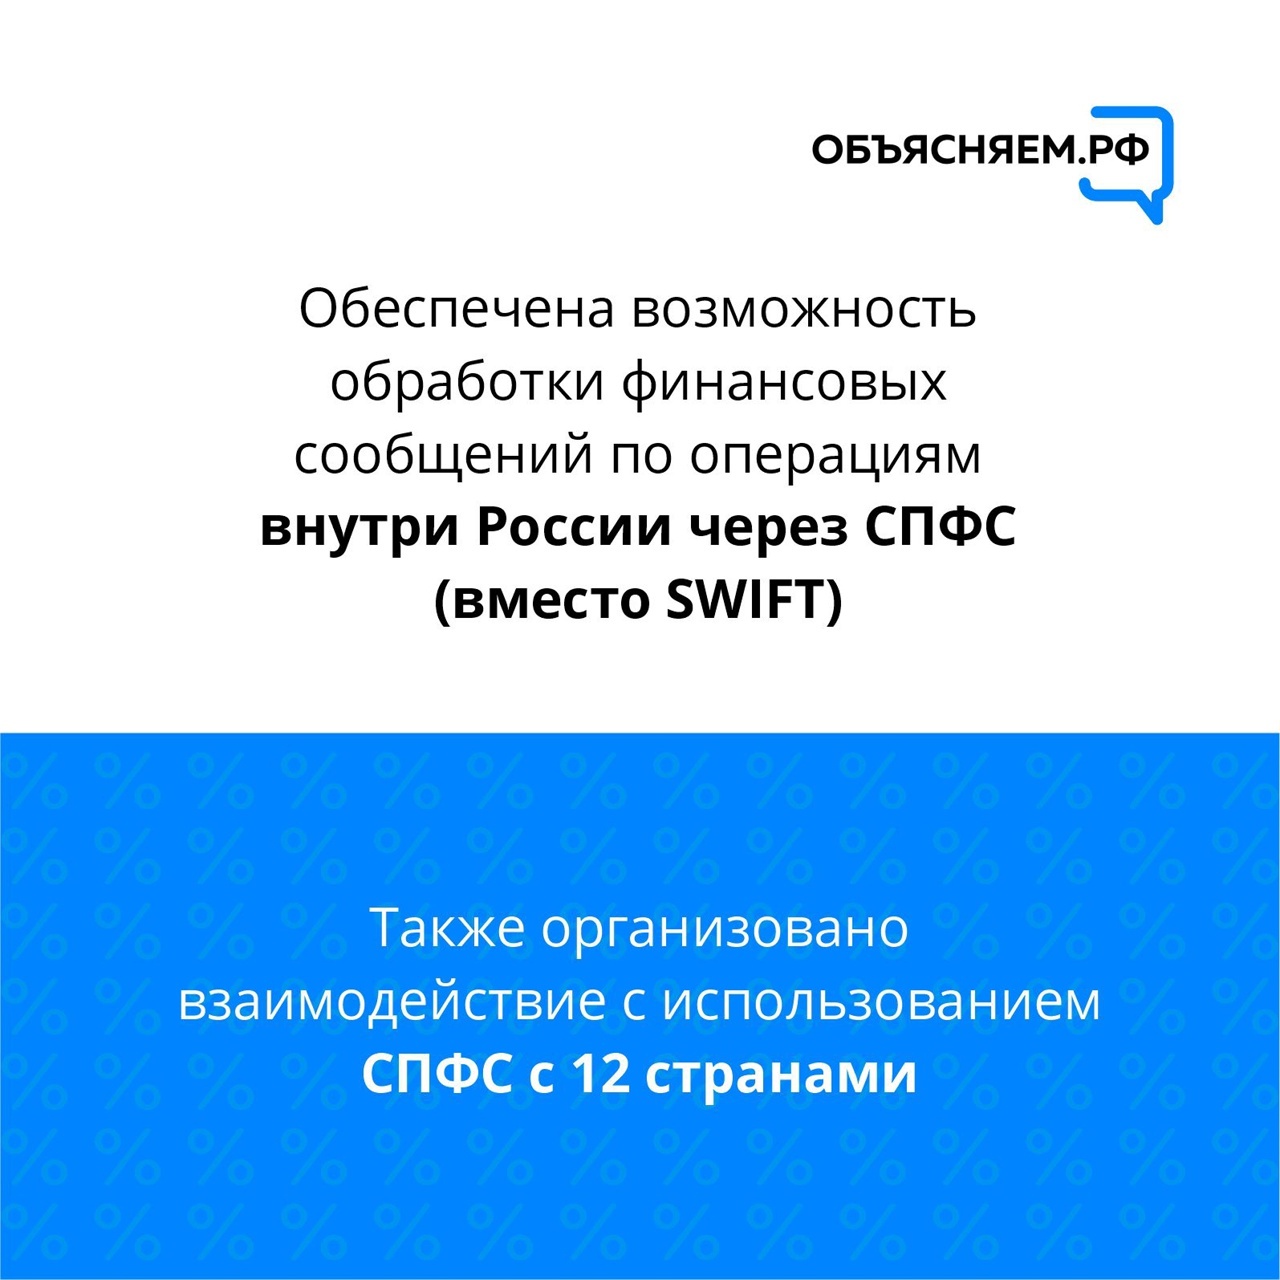 О ключевых мерах Банка России по поддержке граждан, бизнеса и стабилизации финансового рынка – в наших карточках.